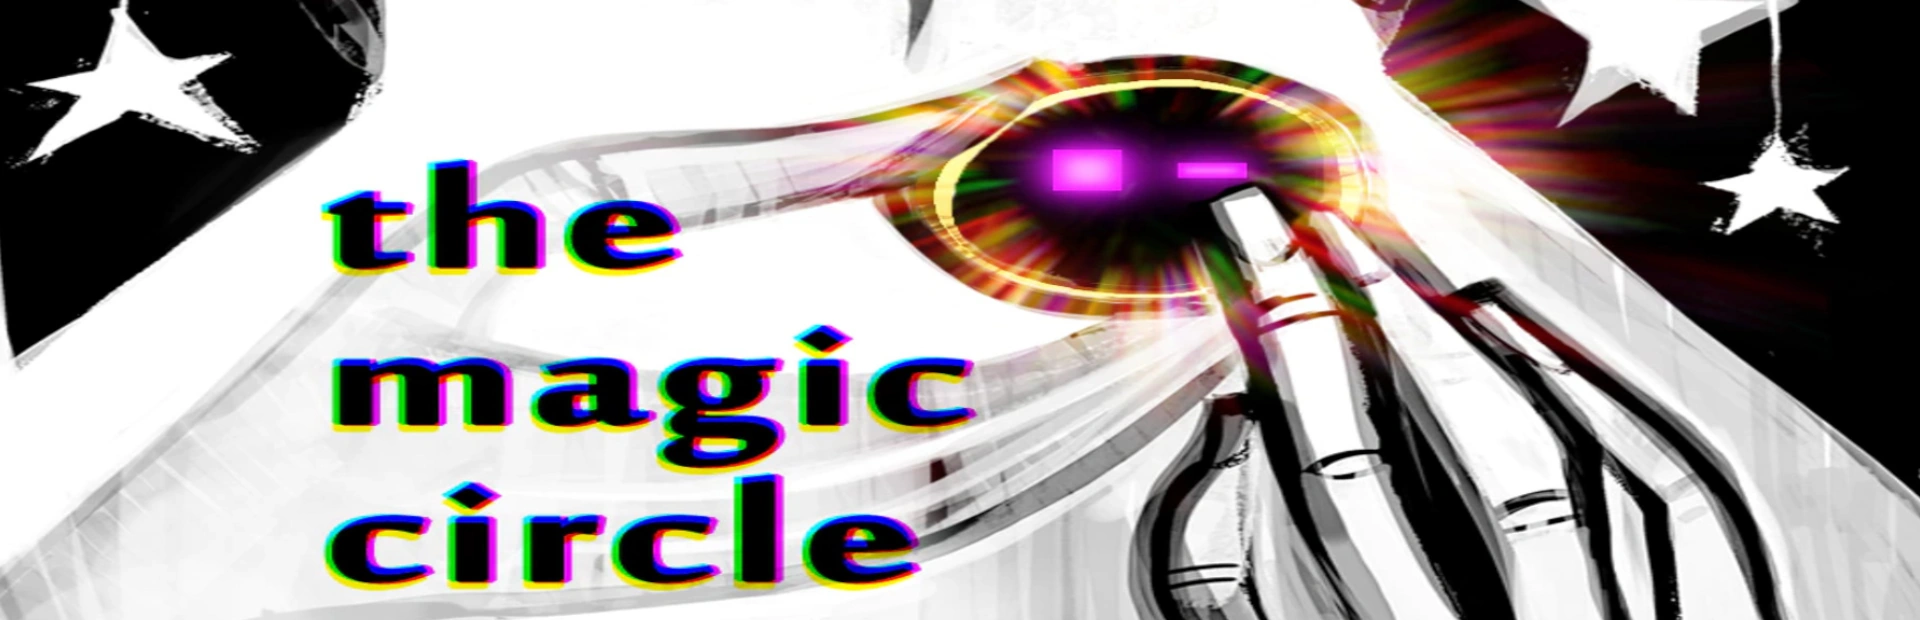 دانلود بازی The Magic Circle برای کامپیوتر | گیمباتو